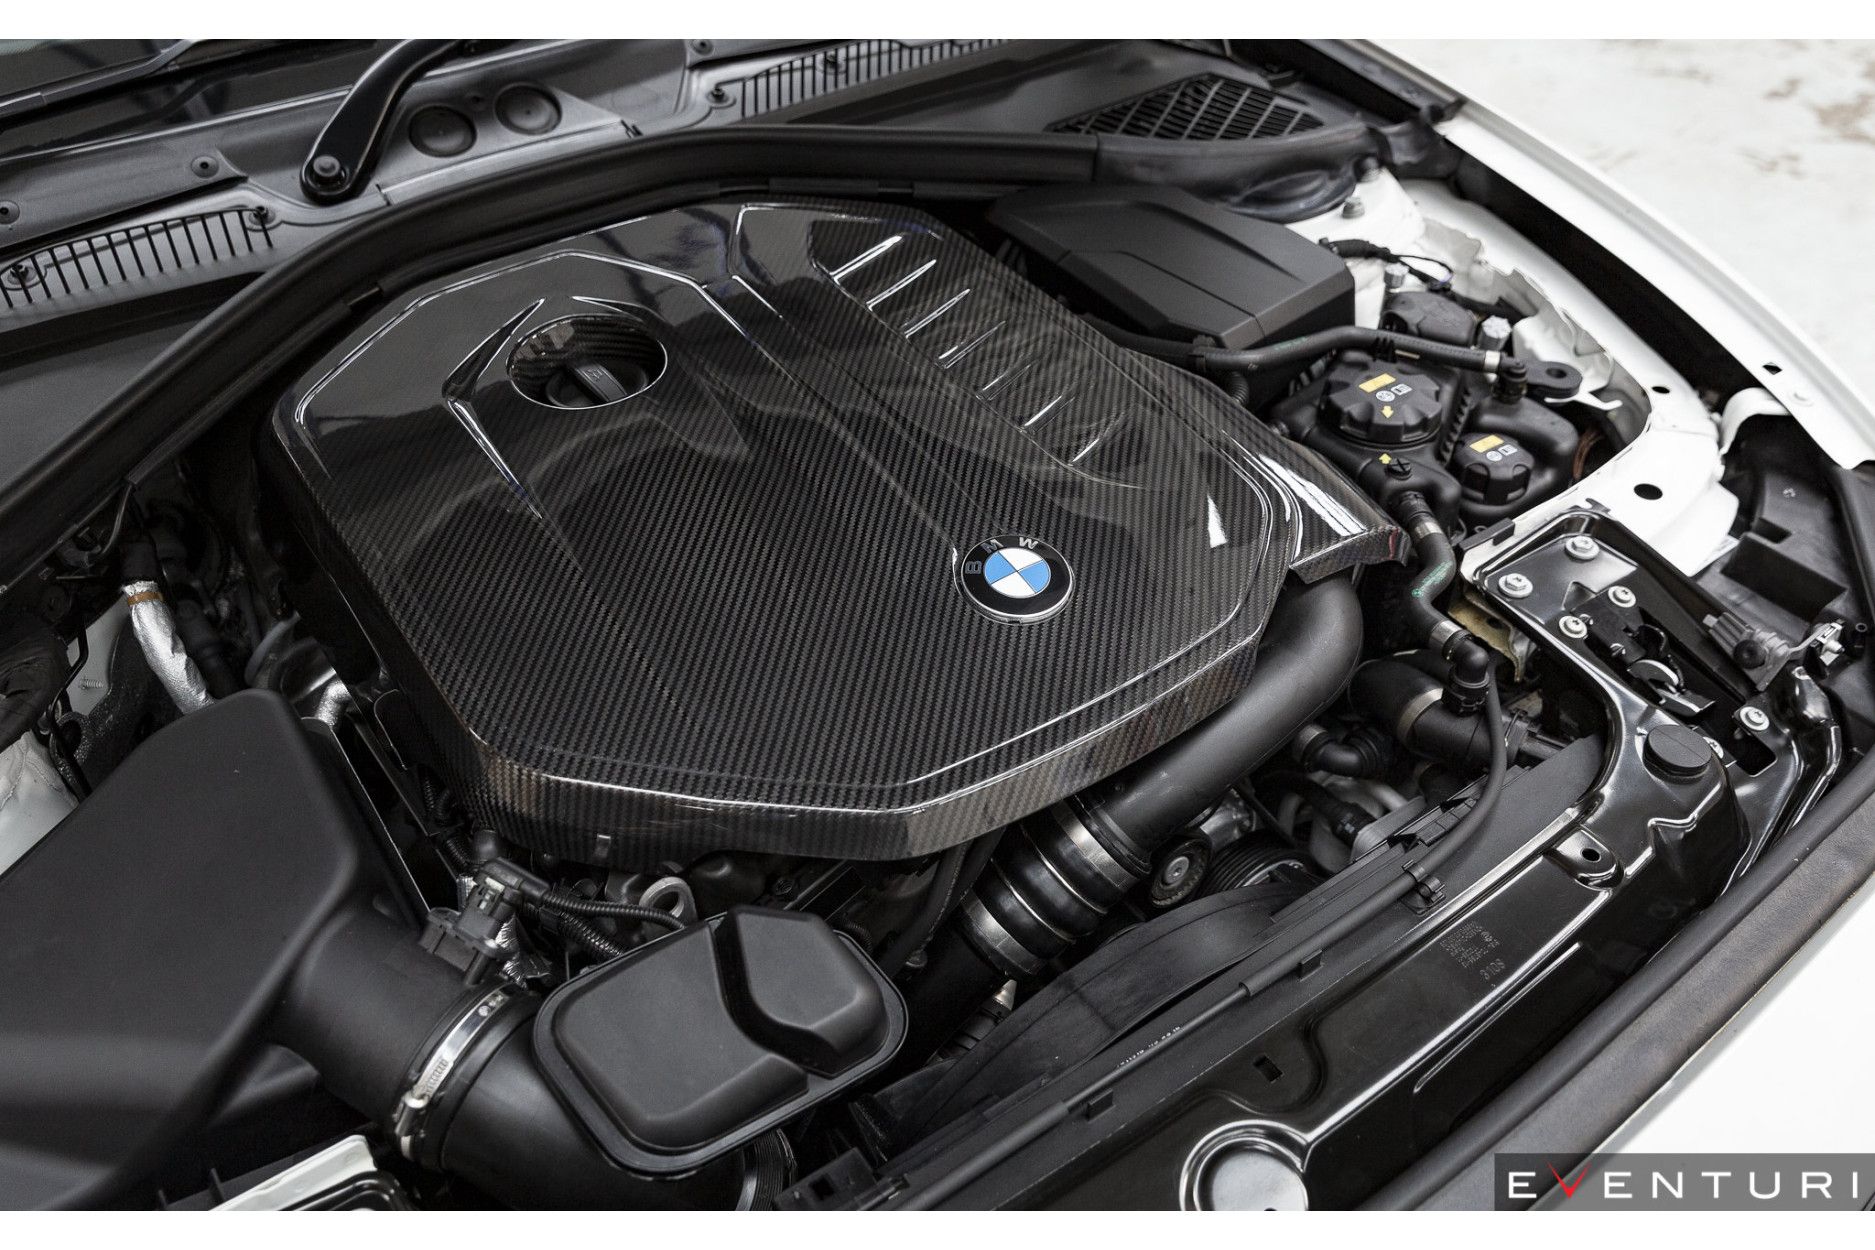 Eventuri Carbon Motorabdeckung für BMW B58 X40i, MX40i und Z4 M40i